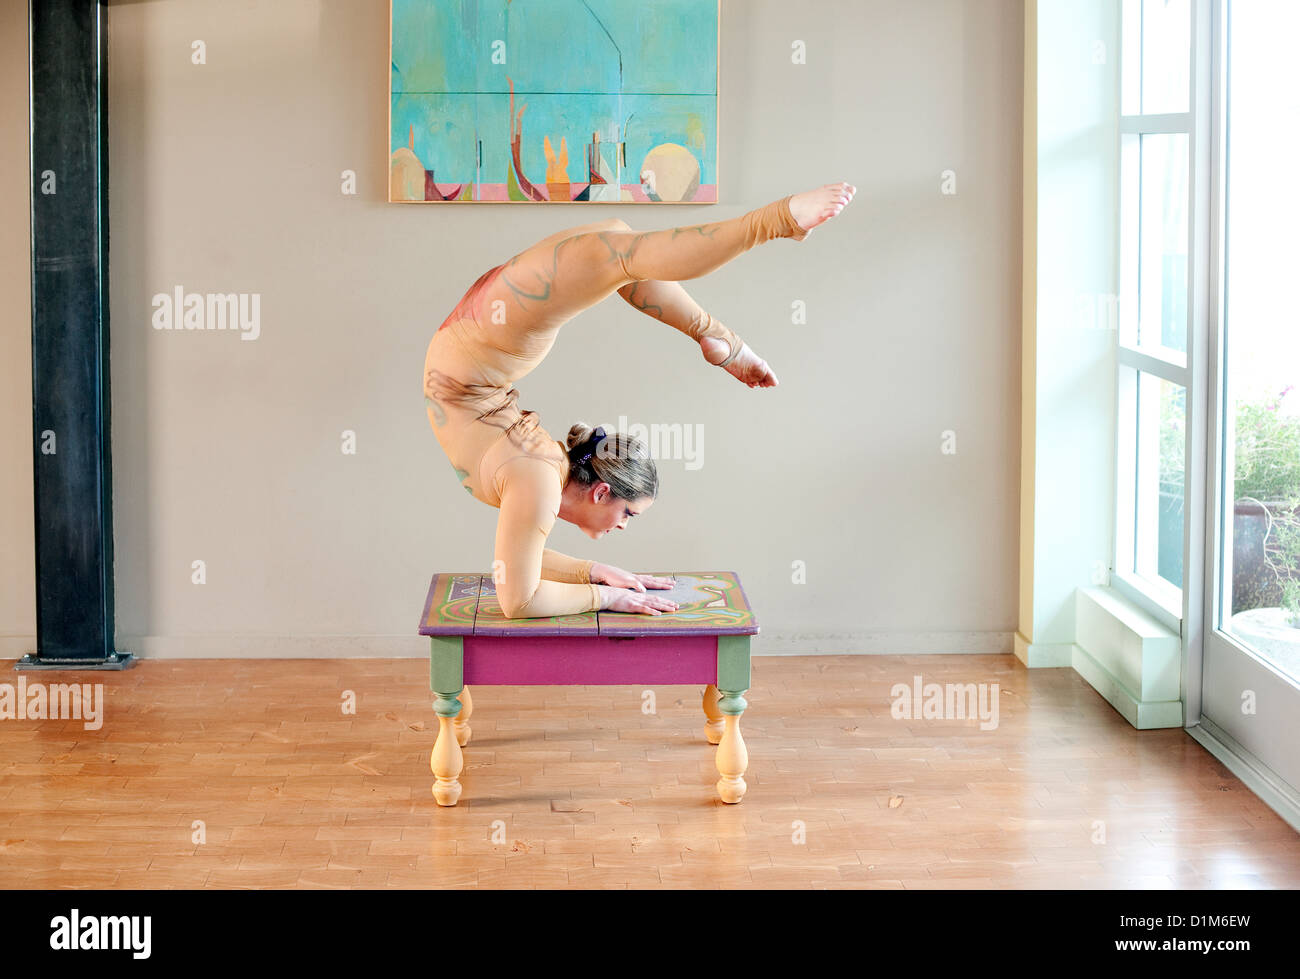 Kreative Acrobat Auswuchten in einen schönen Rücken beugen der Ellenbogen Stand. Stockfoto